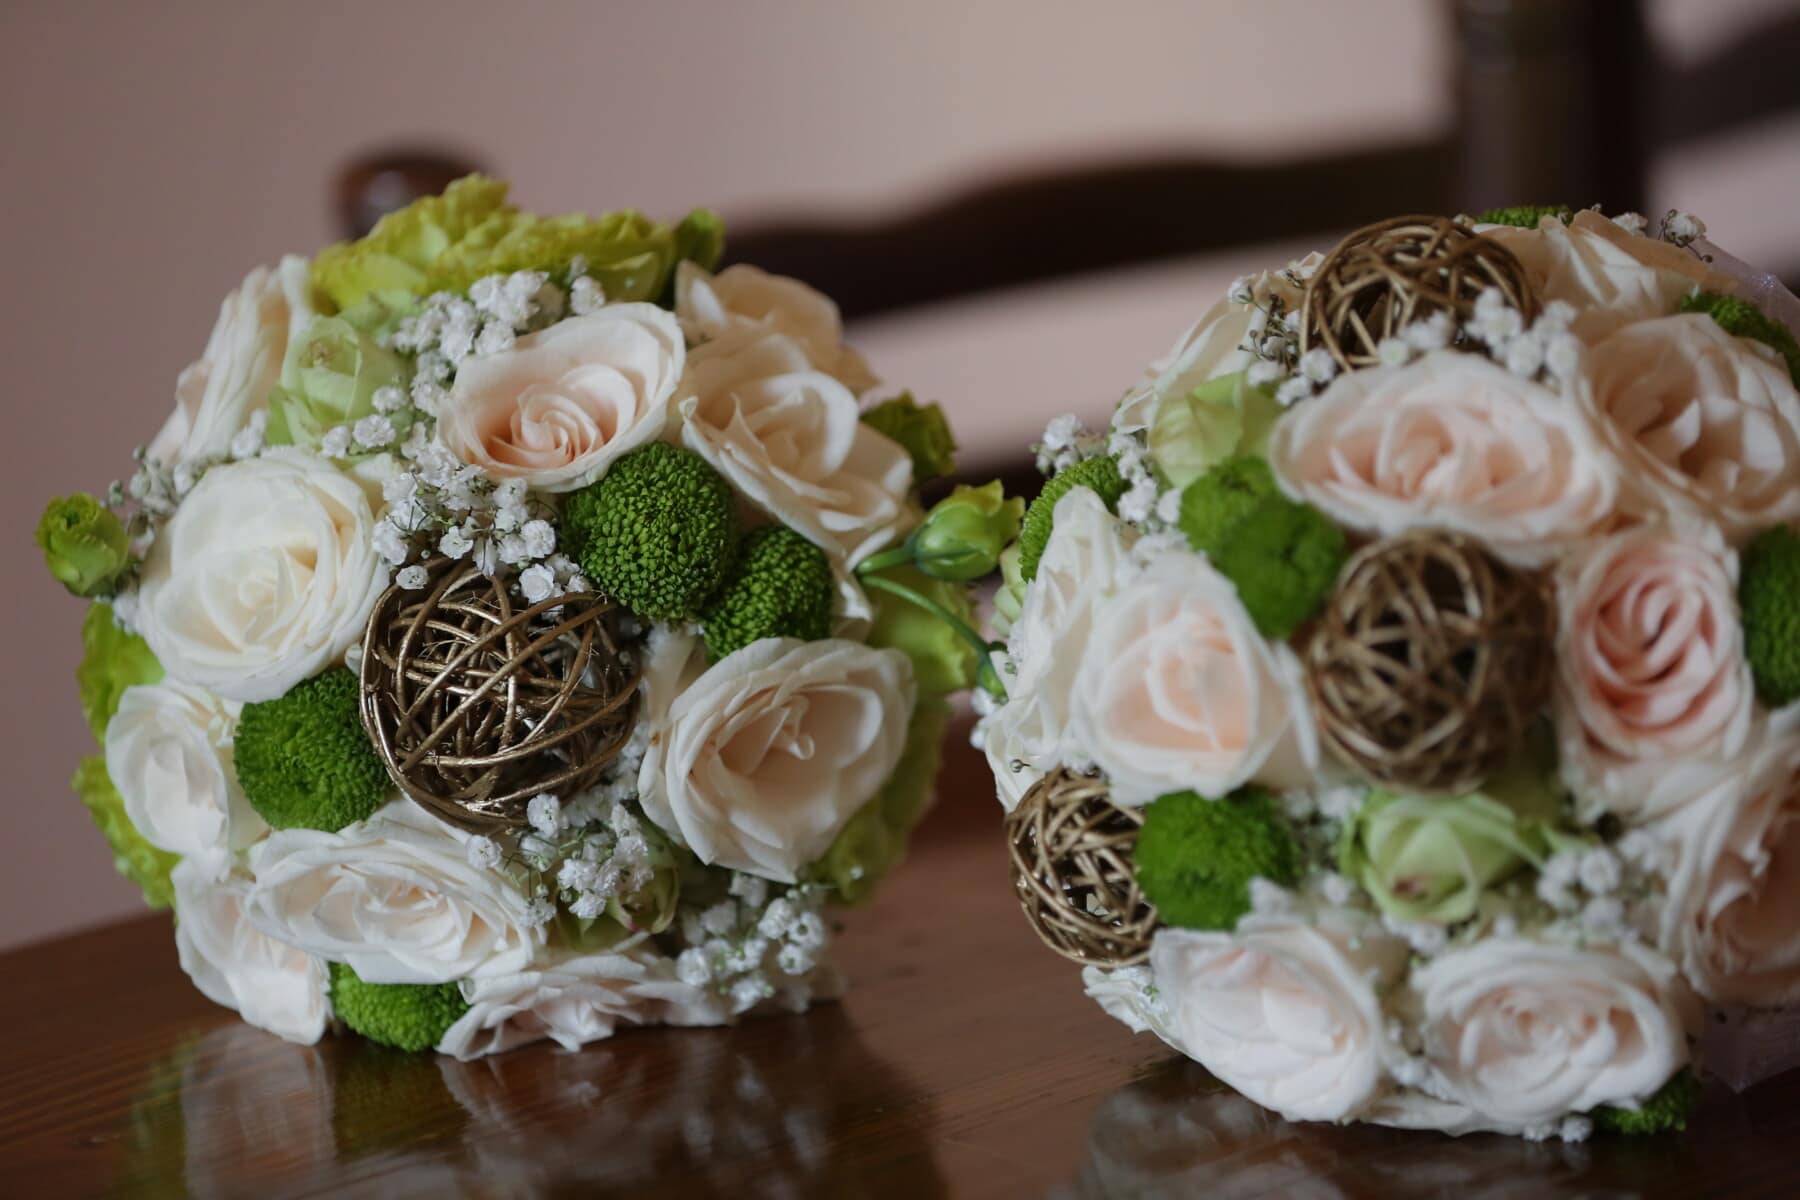 pair, wedding bouquet, table, handmade, close-up, arrangement, bouquet, rose, romance, decoration